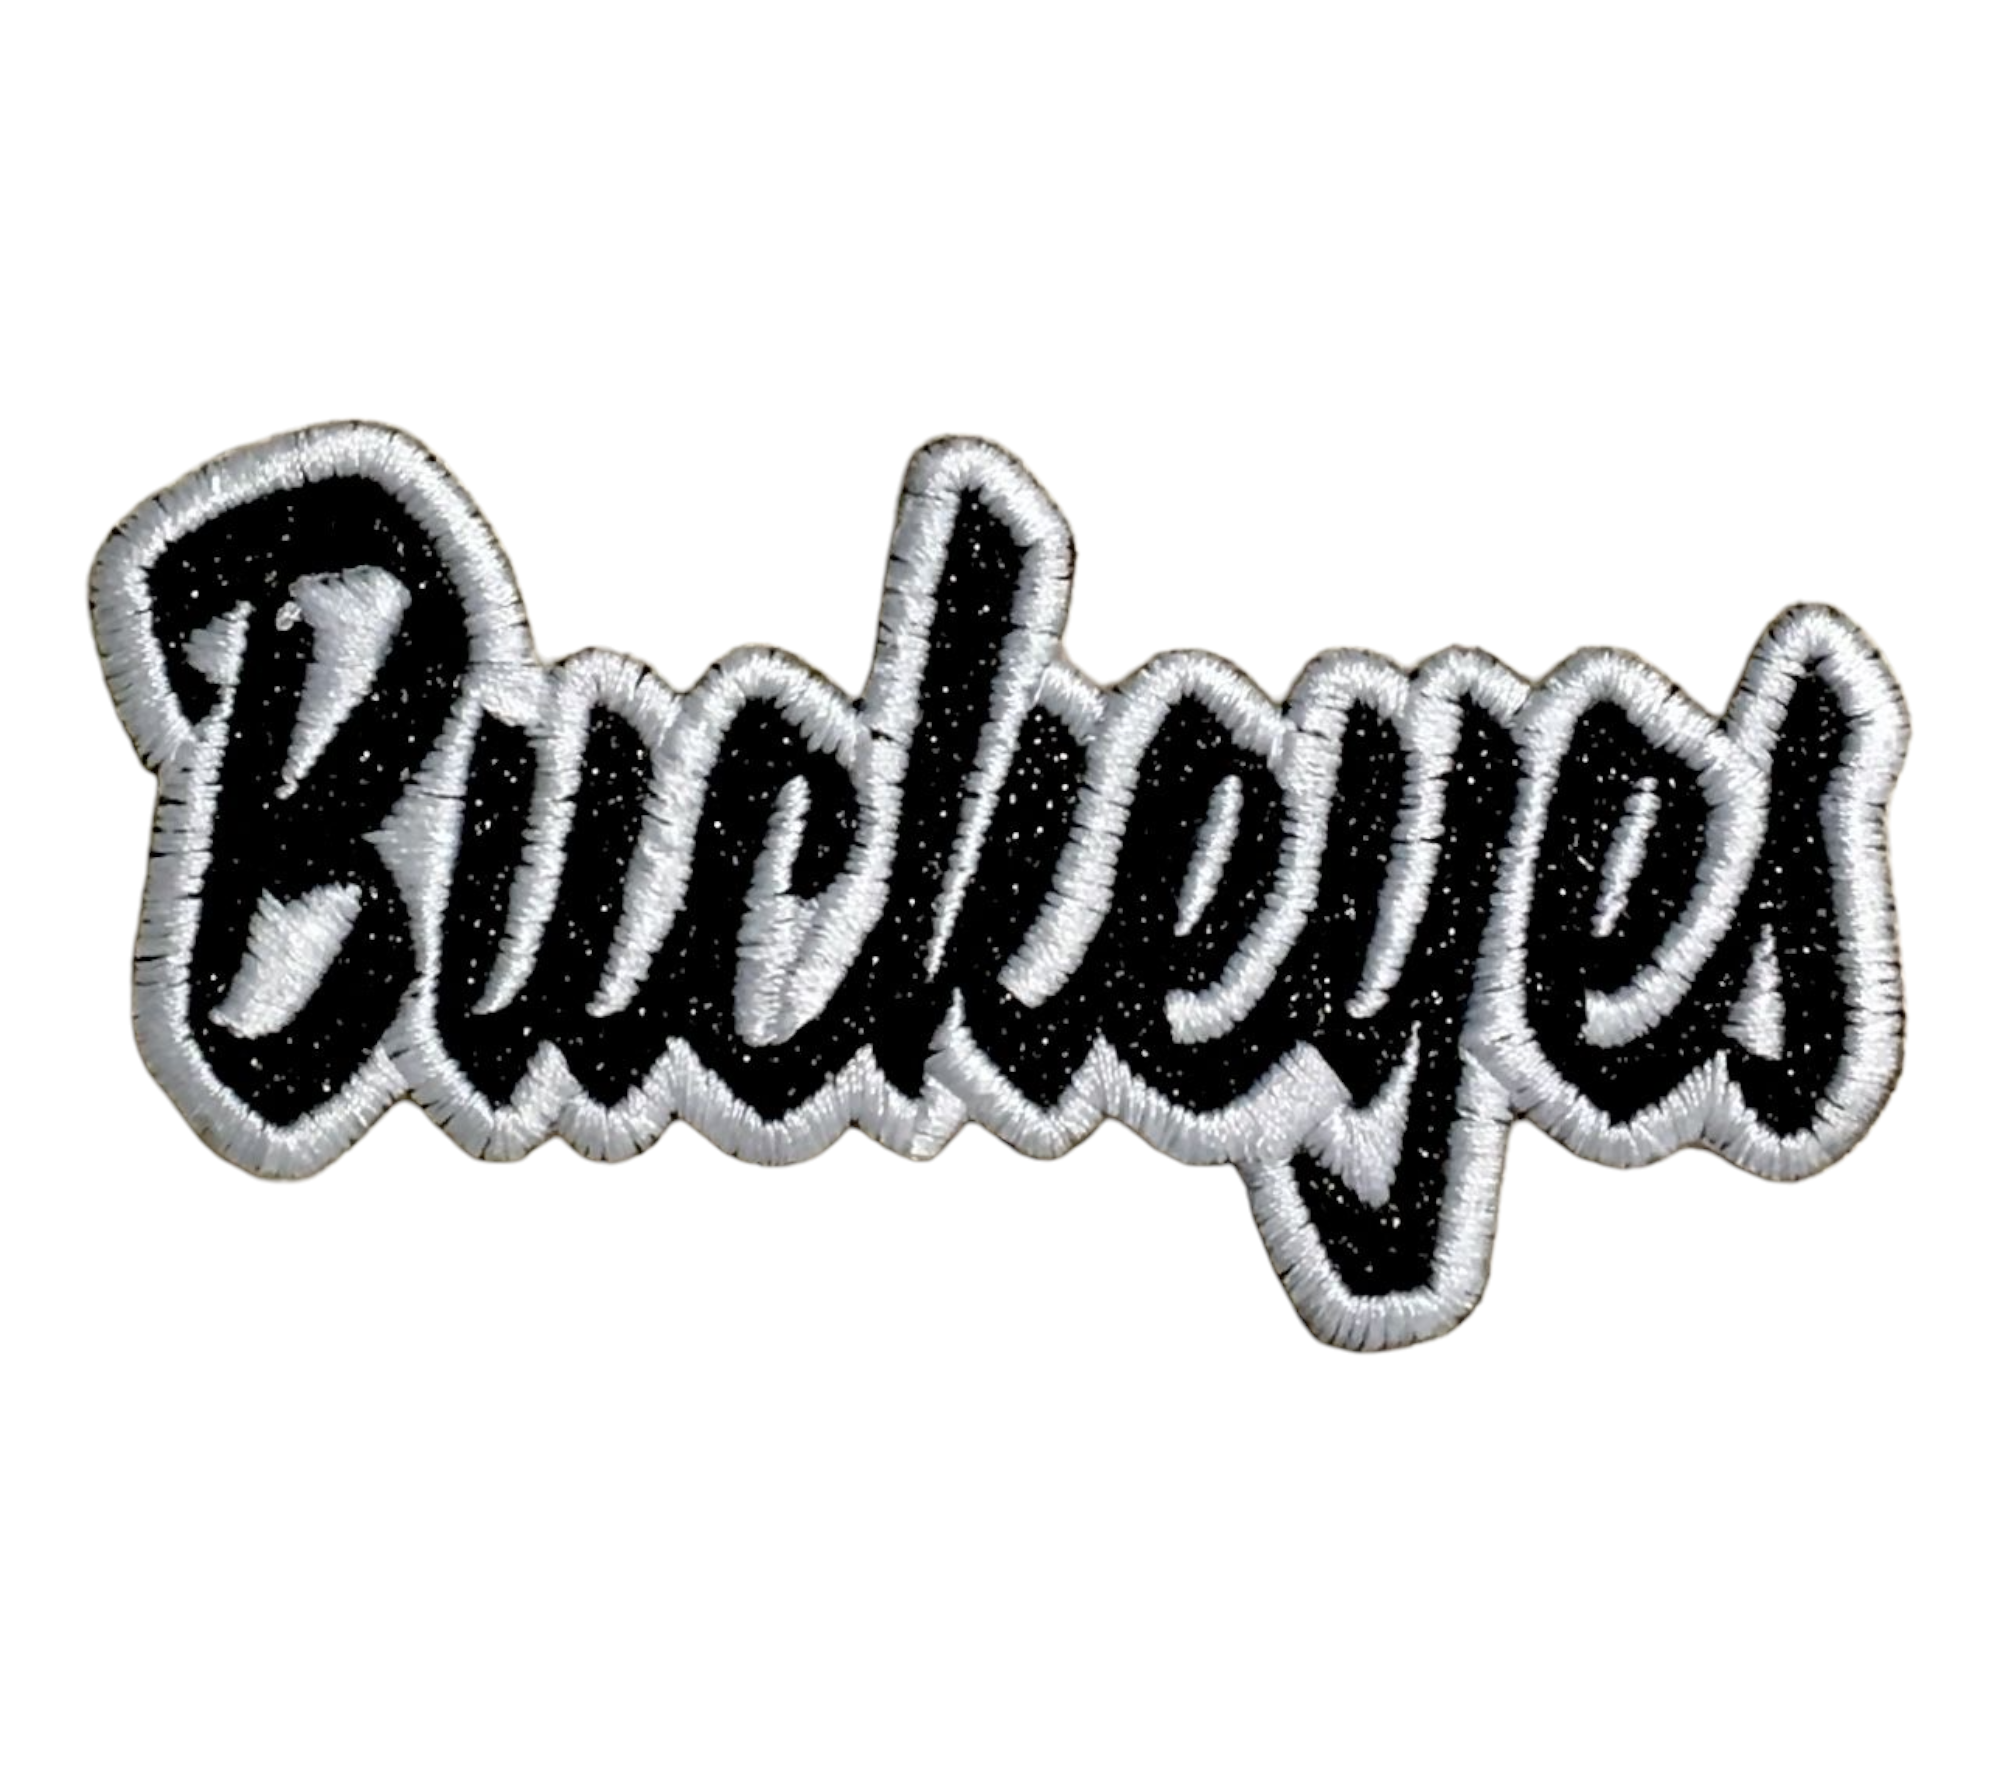 Buckeyes - 2x4 - Black Glitter/White